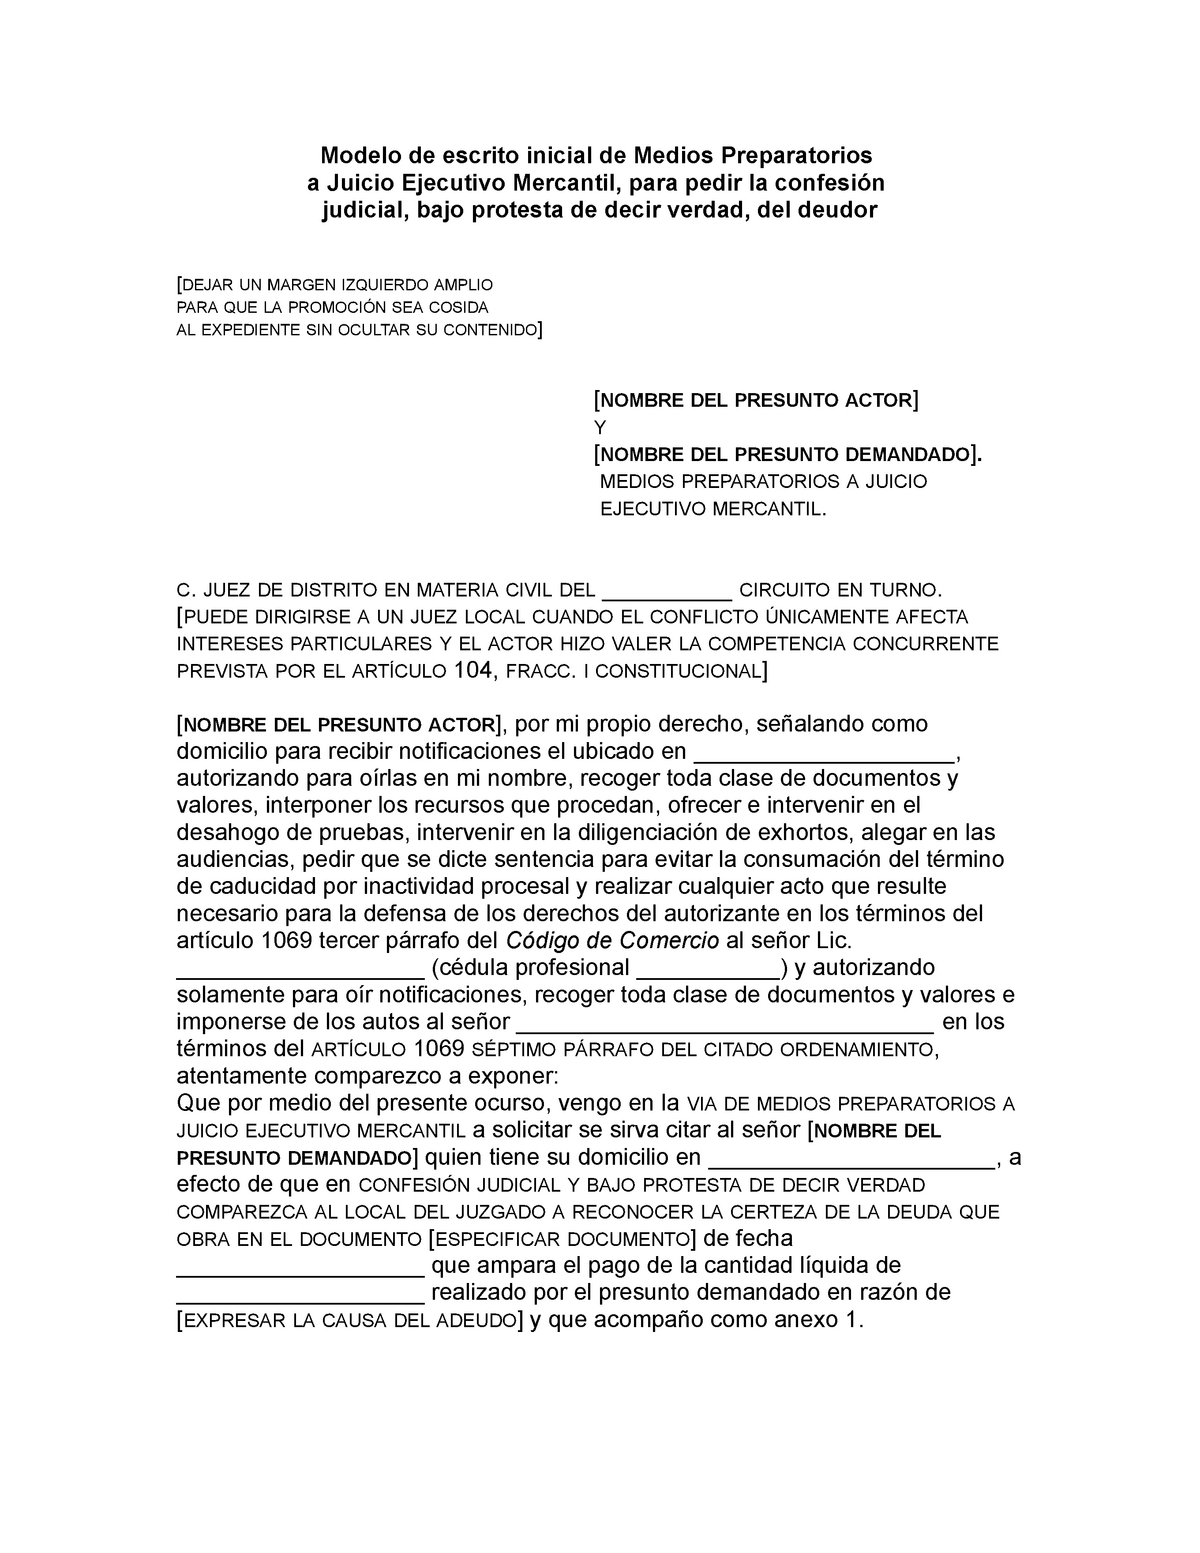 Escrito inicial de medios preparatorios a juicio ejecutivo mercantil  solicitud de confesión judicial - Studocu